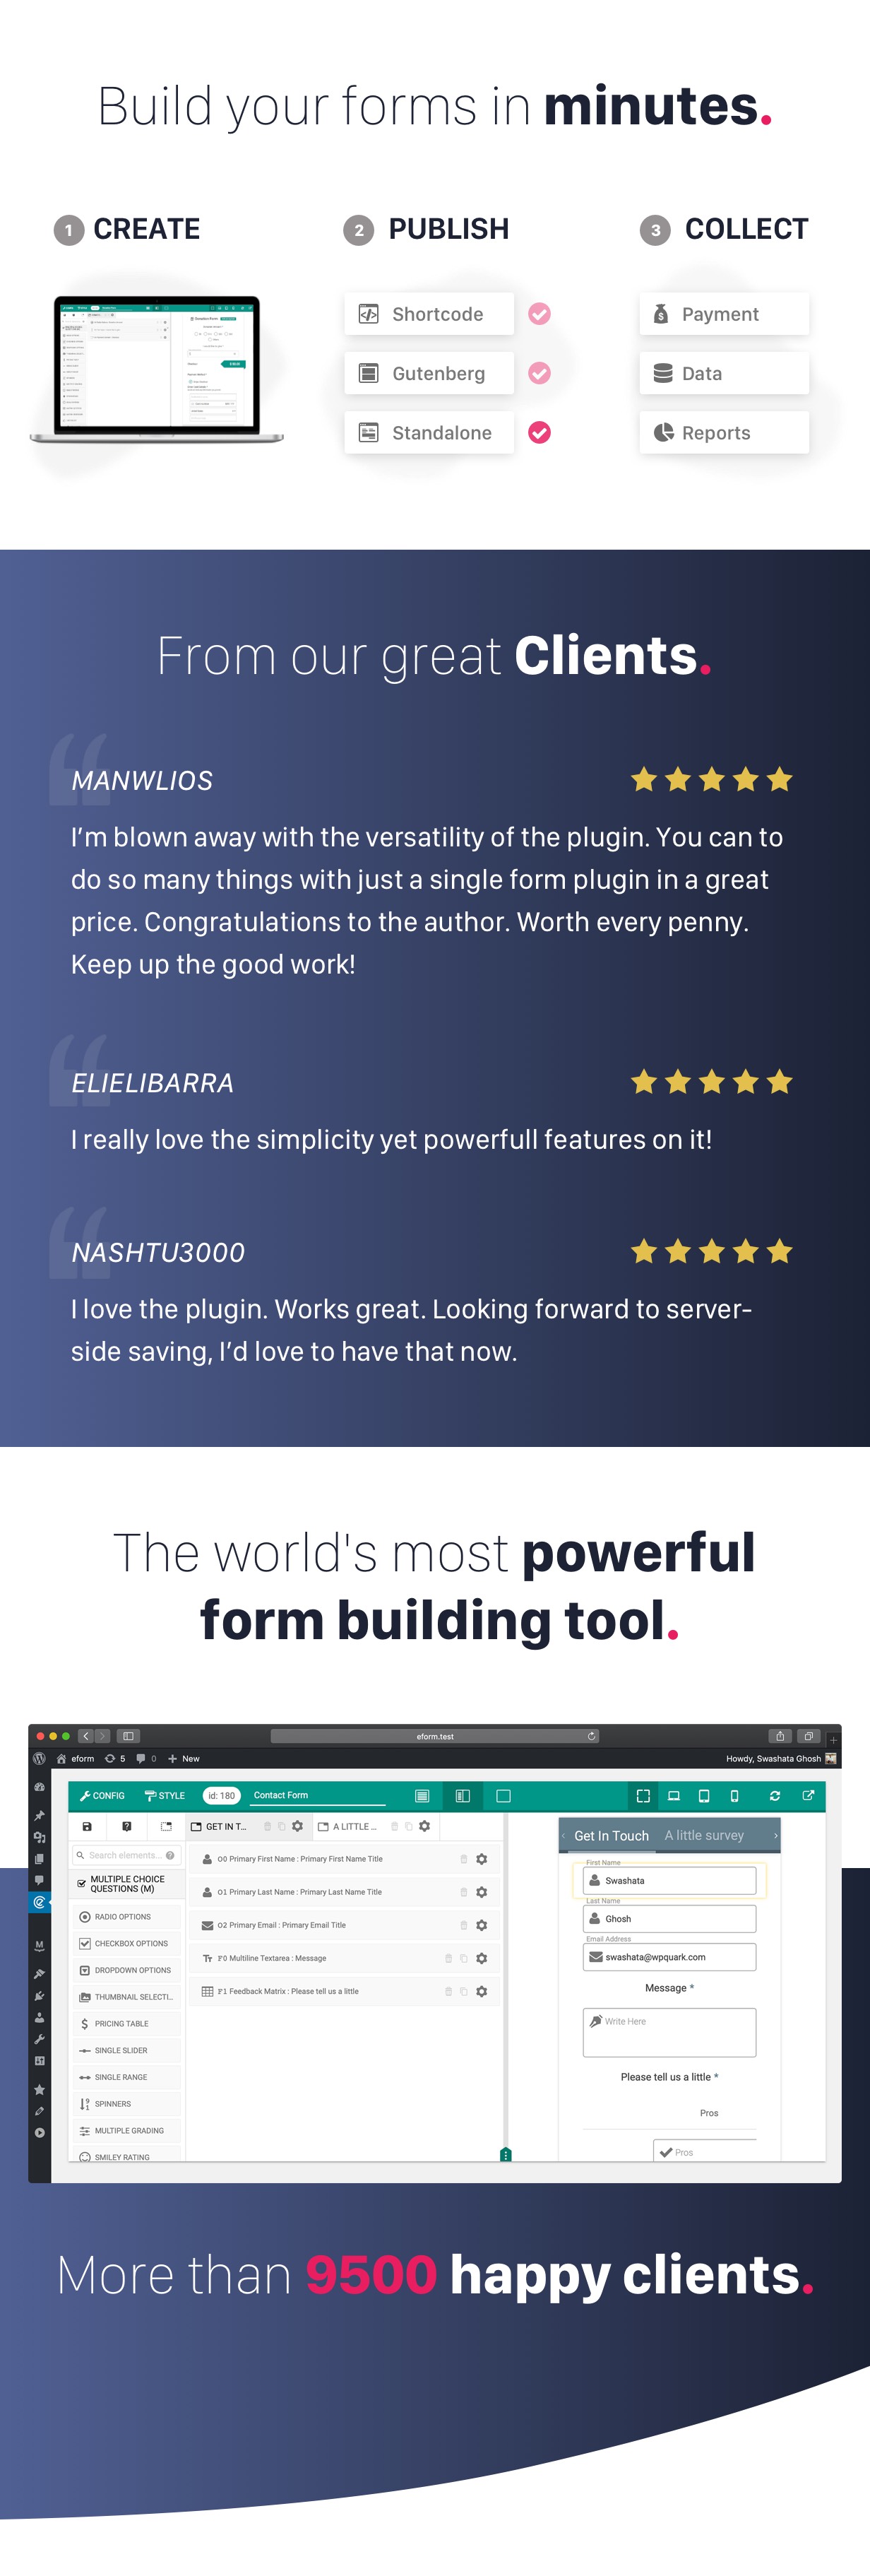 eForm - Creador de formularios de WordPress